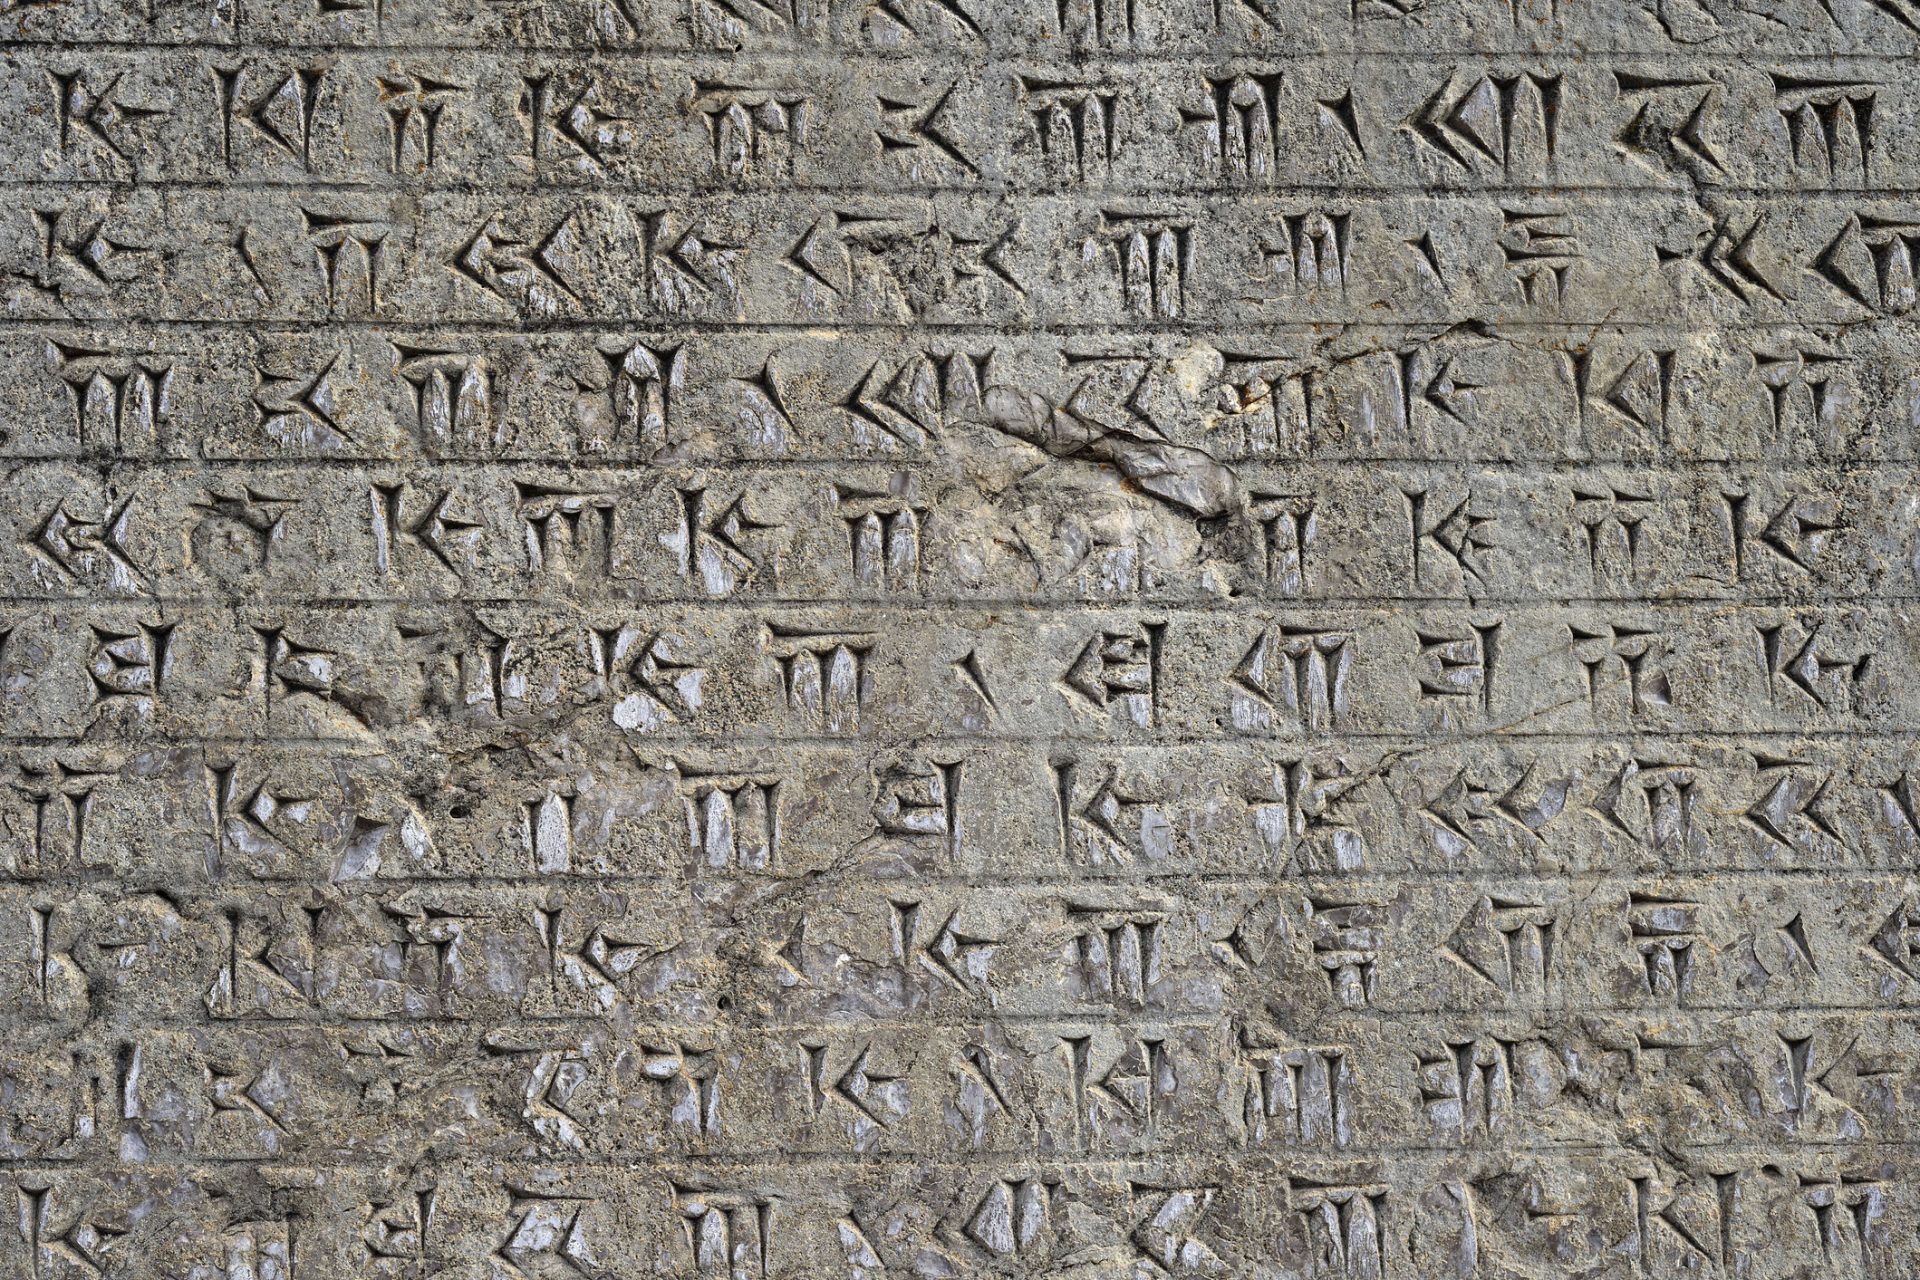 Des archéologues viennent de découvrir une toute nouvelle langue ancienne !